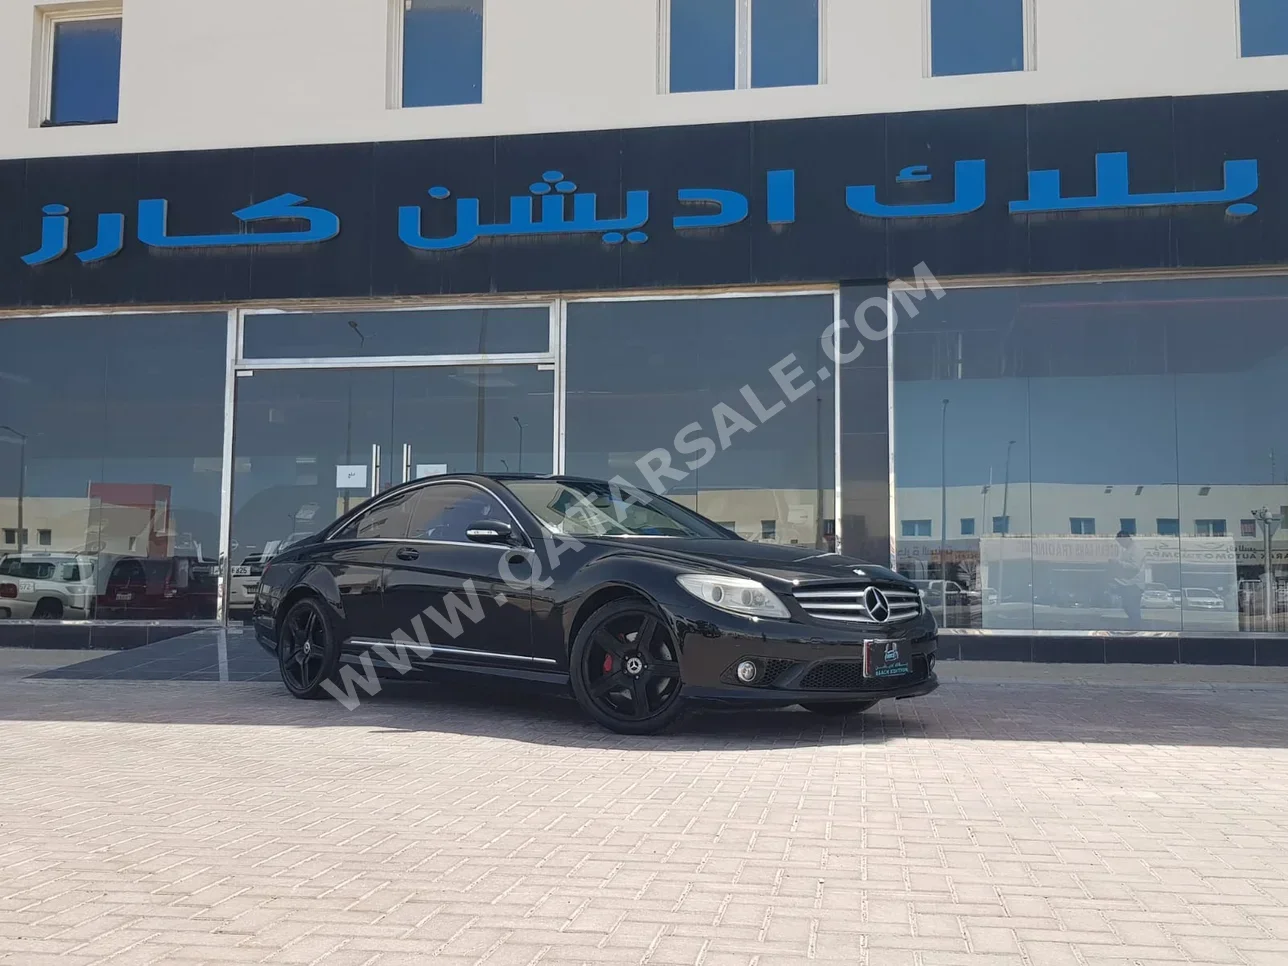 Mercedes-Benz  CL  550 AMG  2008  Automatic  158,000 Km  8 Cylinder  Rear Wheel Drive (RWD)  Sedan  Black